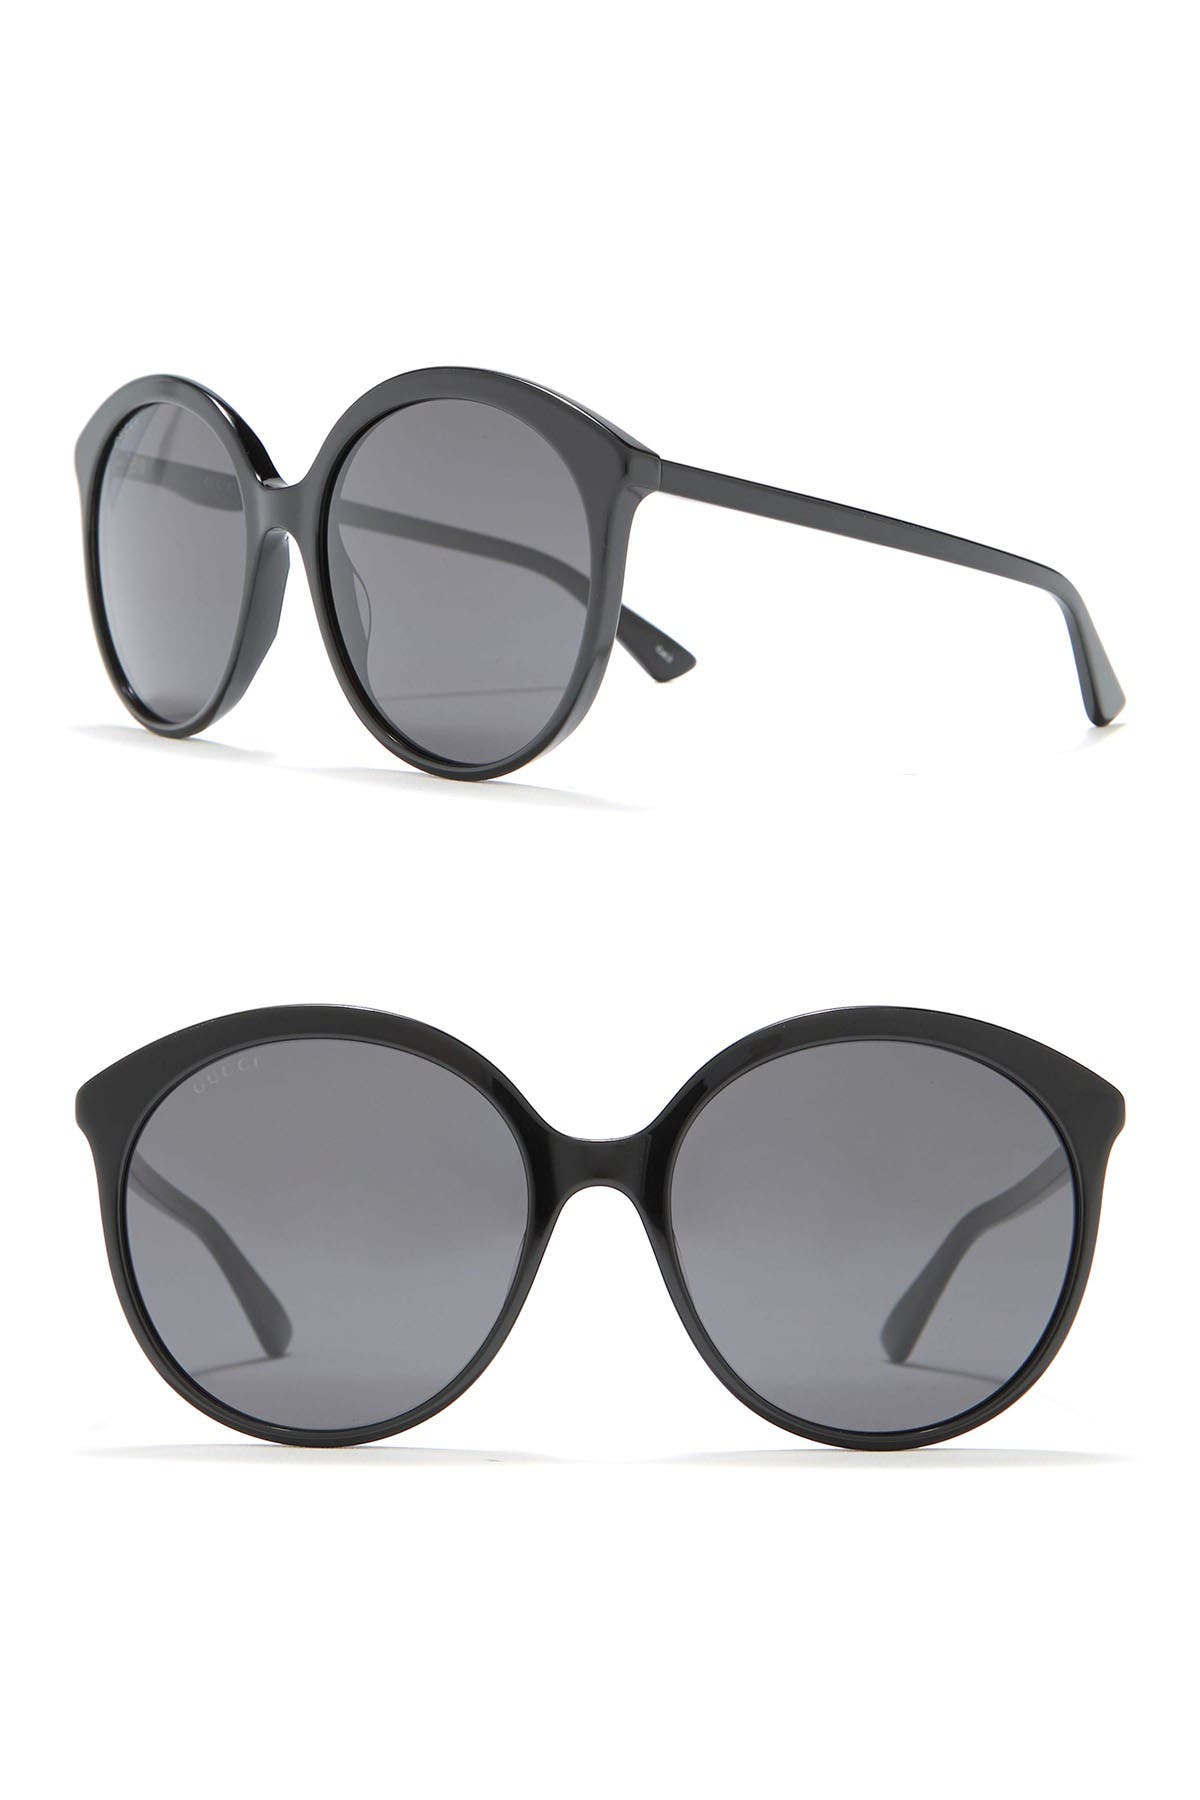 gucci 59mm round sunglasses